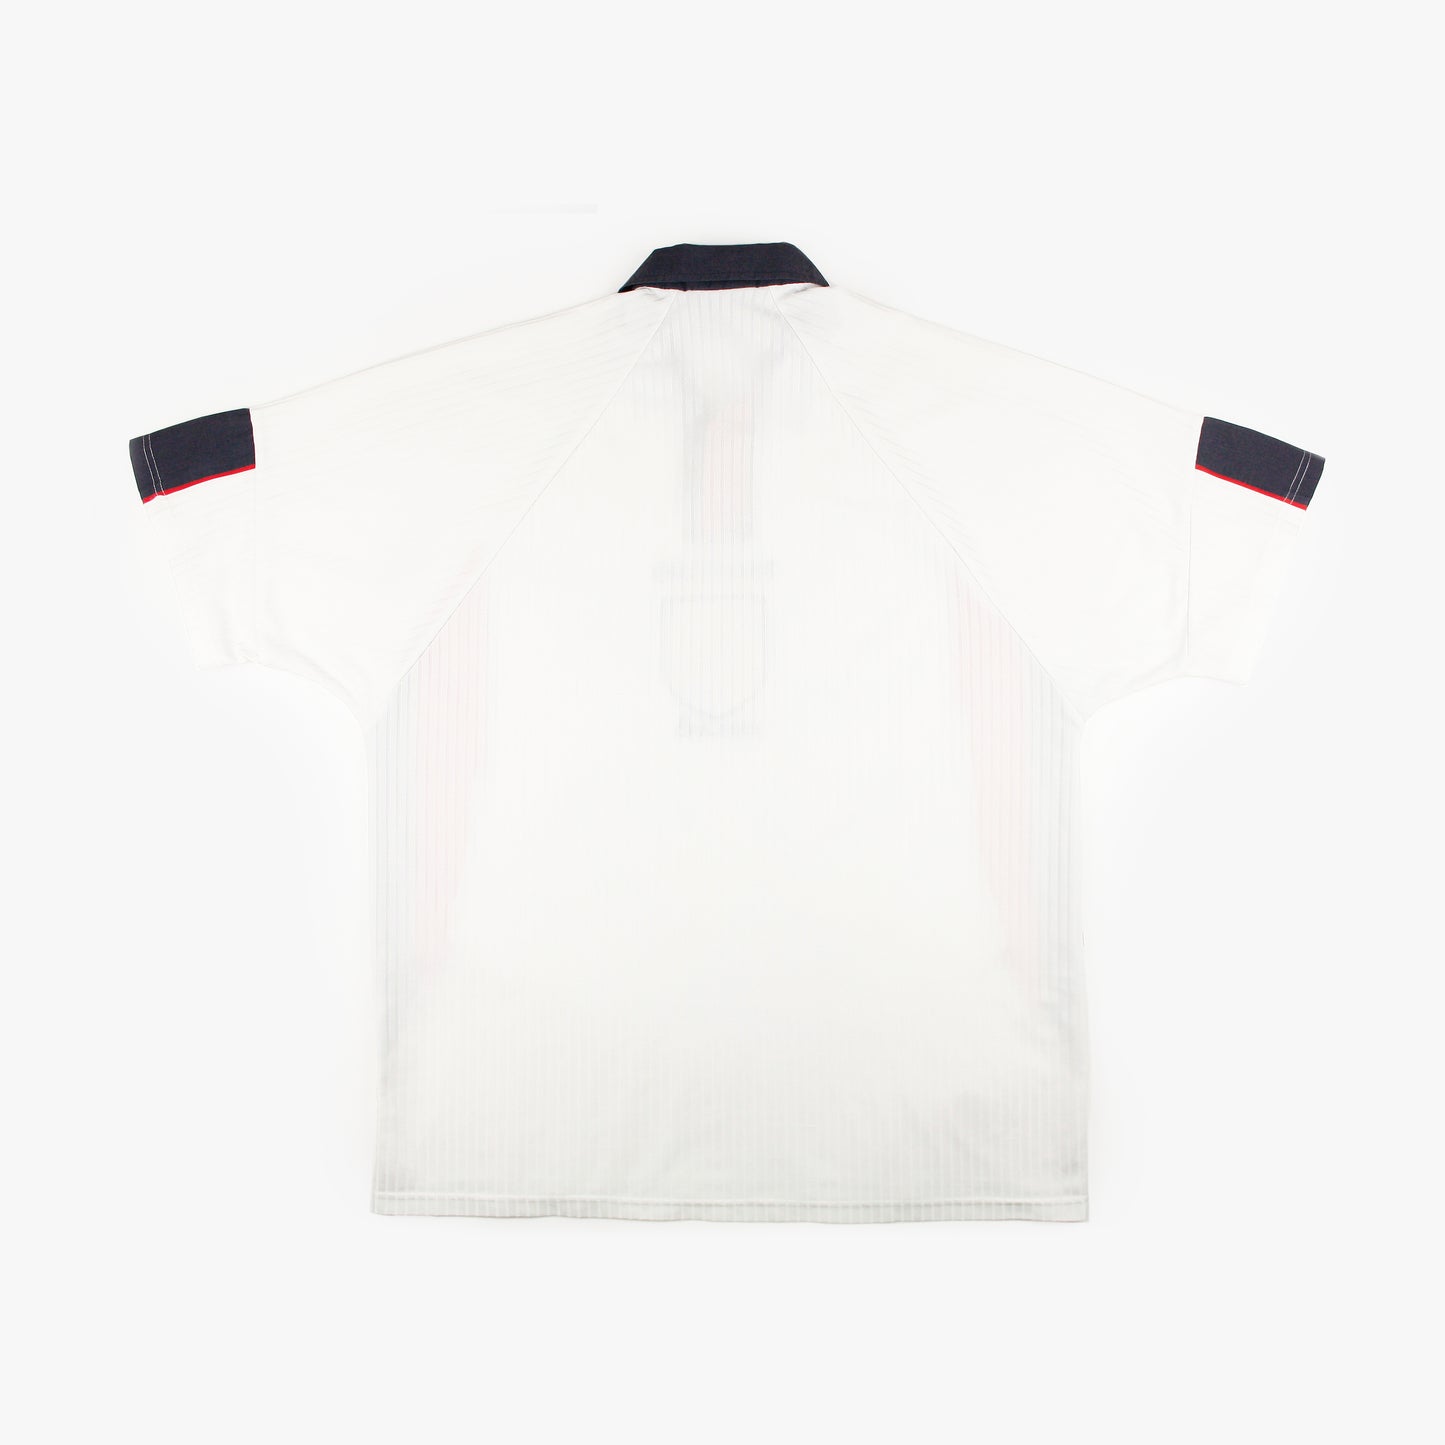 England 97/98 • Home Shirt • XL